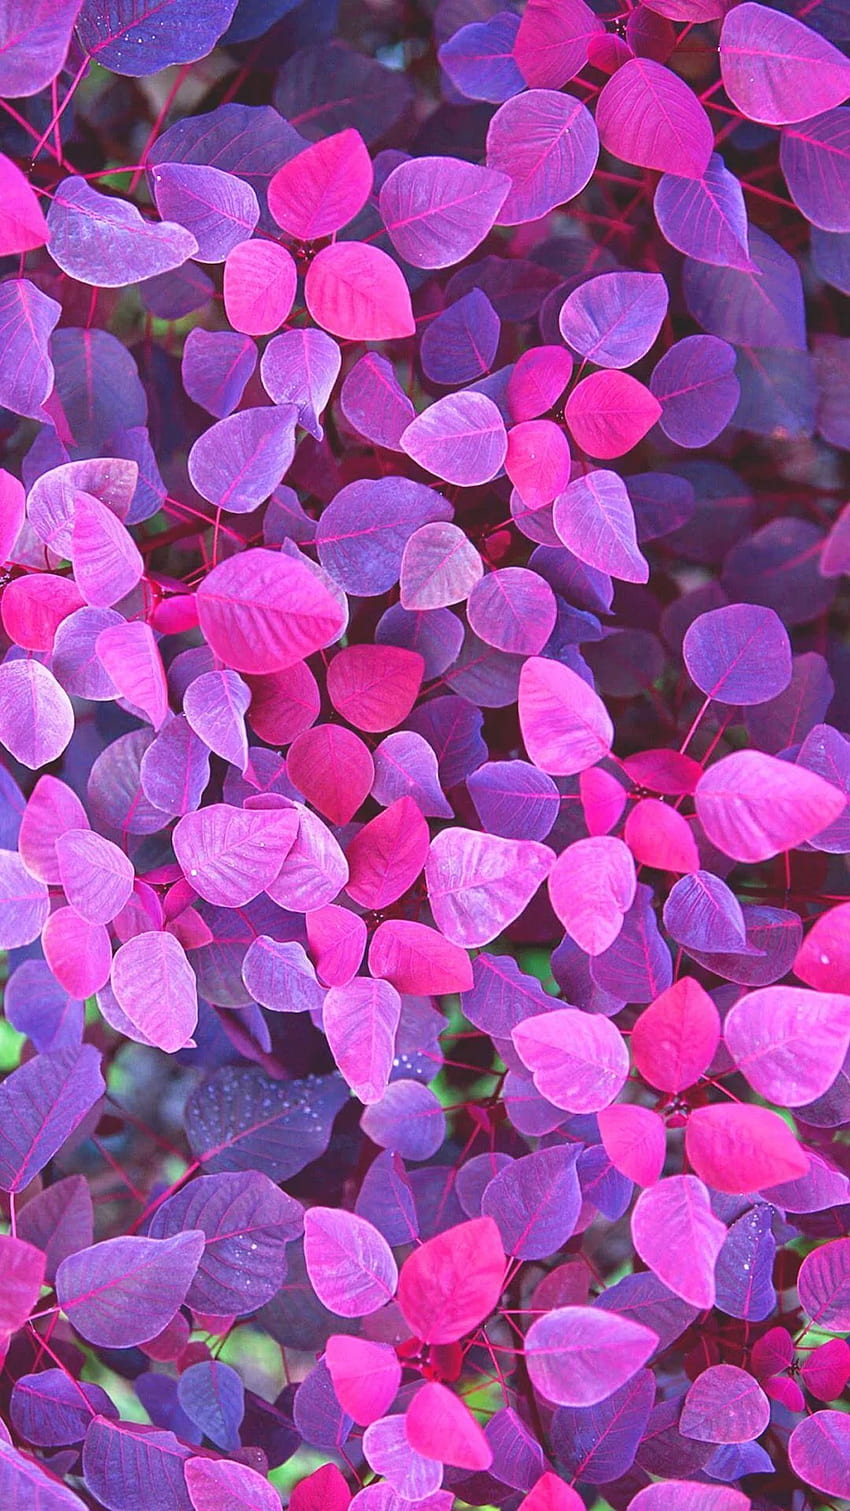 Hình Nền Điện Thoại Tím: Tông màu tím quý phải của hình nền này sẽ đem đến cho bạn cảm giác sang trọng và độc đáo. Hình ảnh phối hợp màu sắc độc đáo giữa cánh hoa và nền tím sẽ tăng thêm sự thu hút cho chiếc điện thoại của bạn.